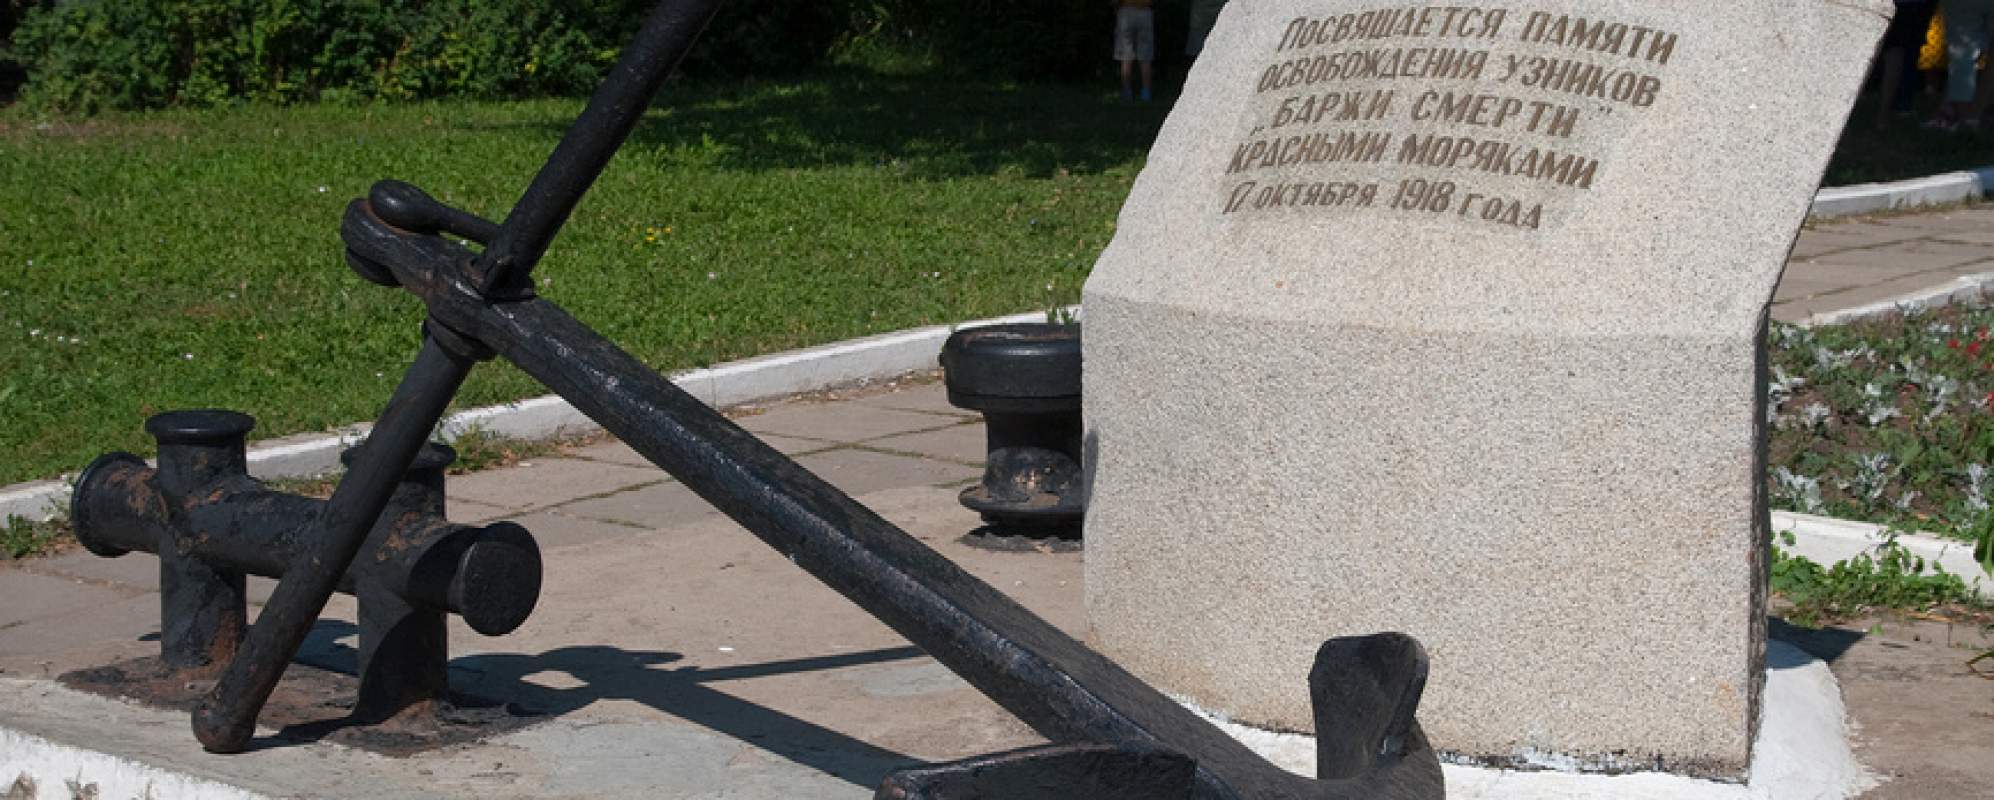 Фотографии памятника Памятник узникам Баржи смерти